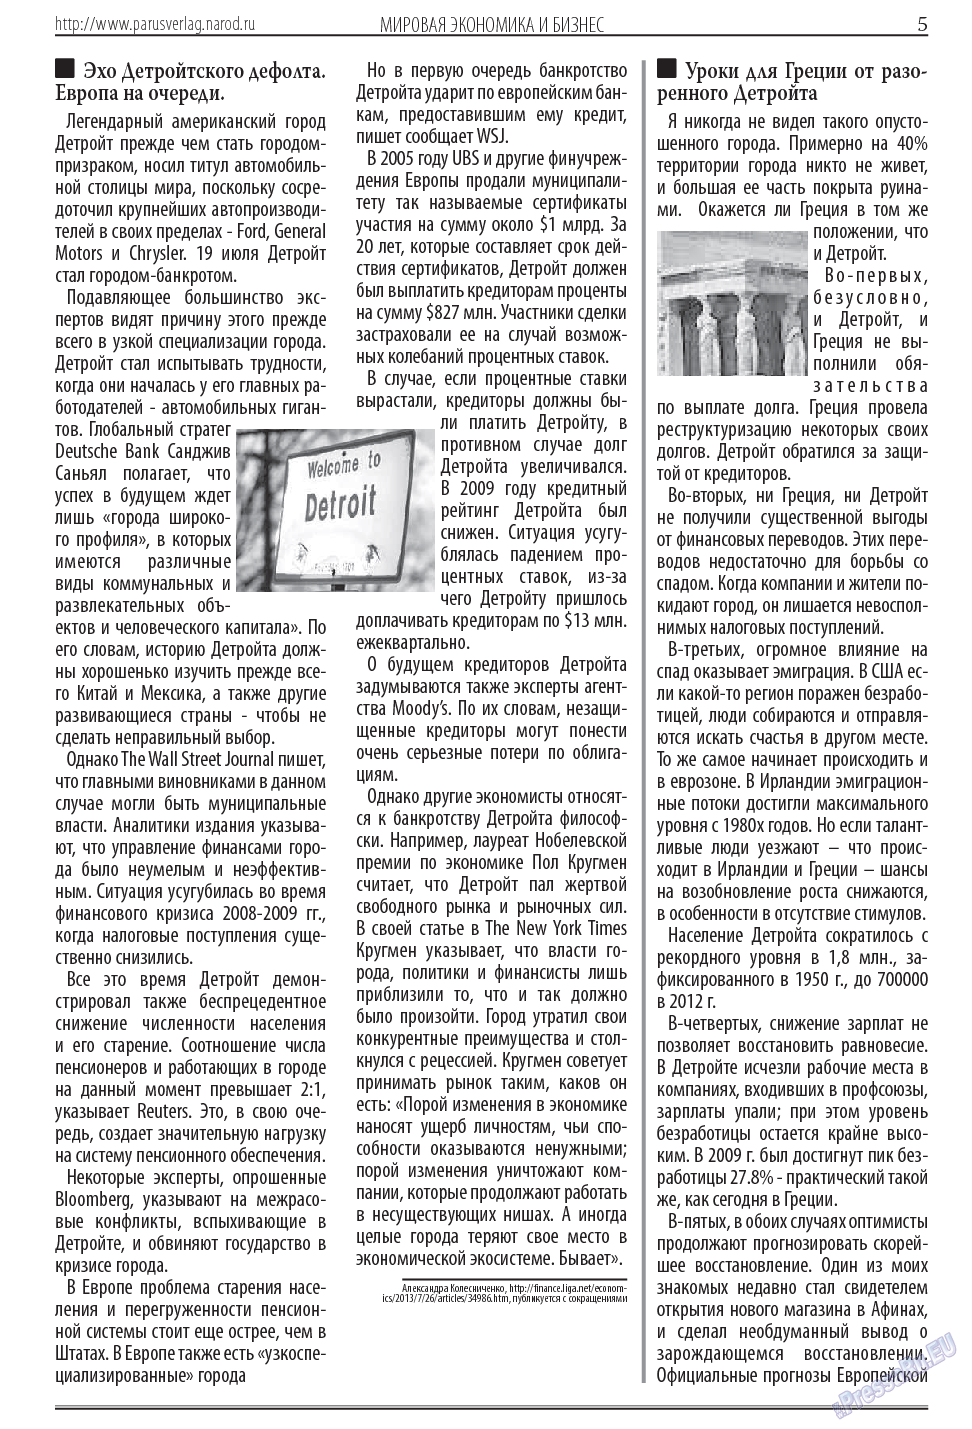 Парус (газета). 2013 год, номер 11, стр. 5